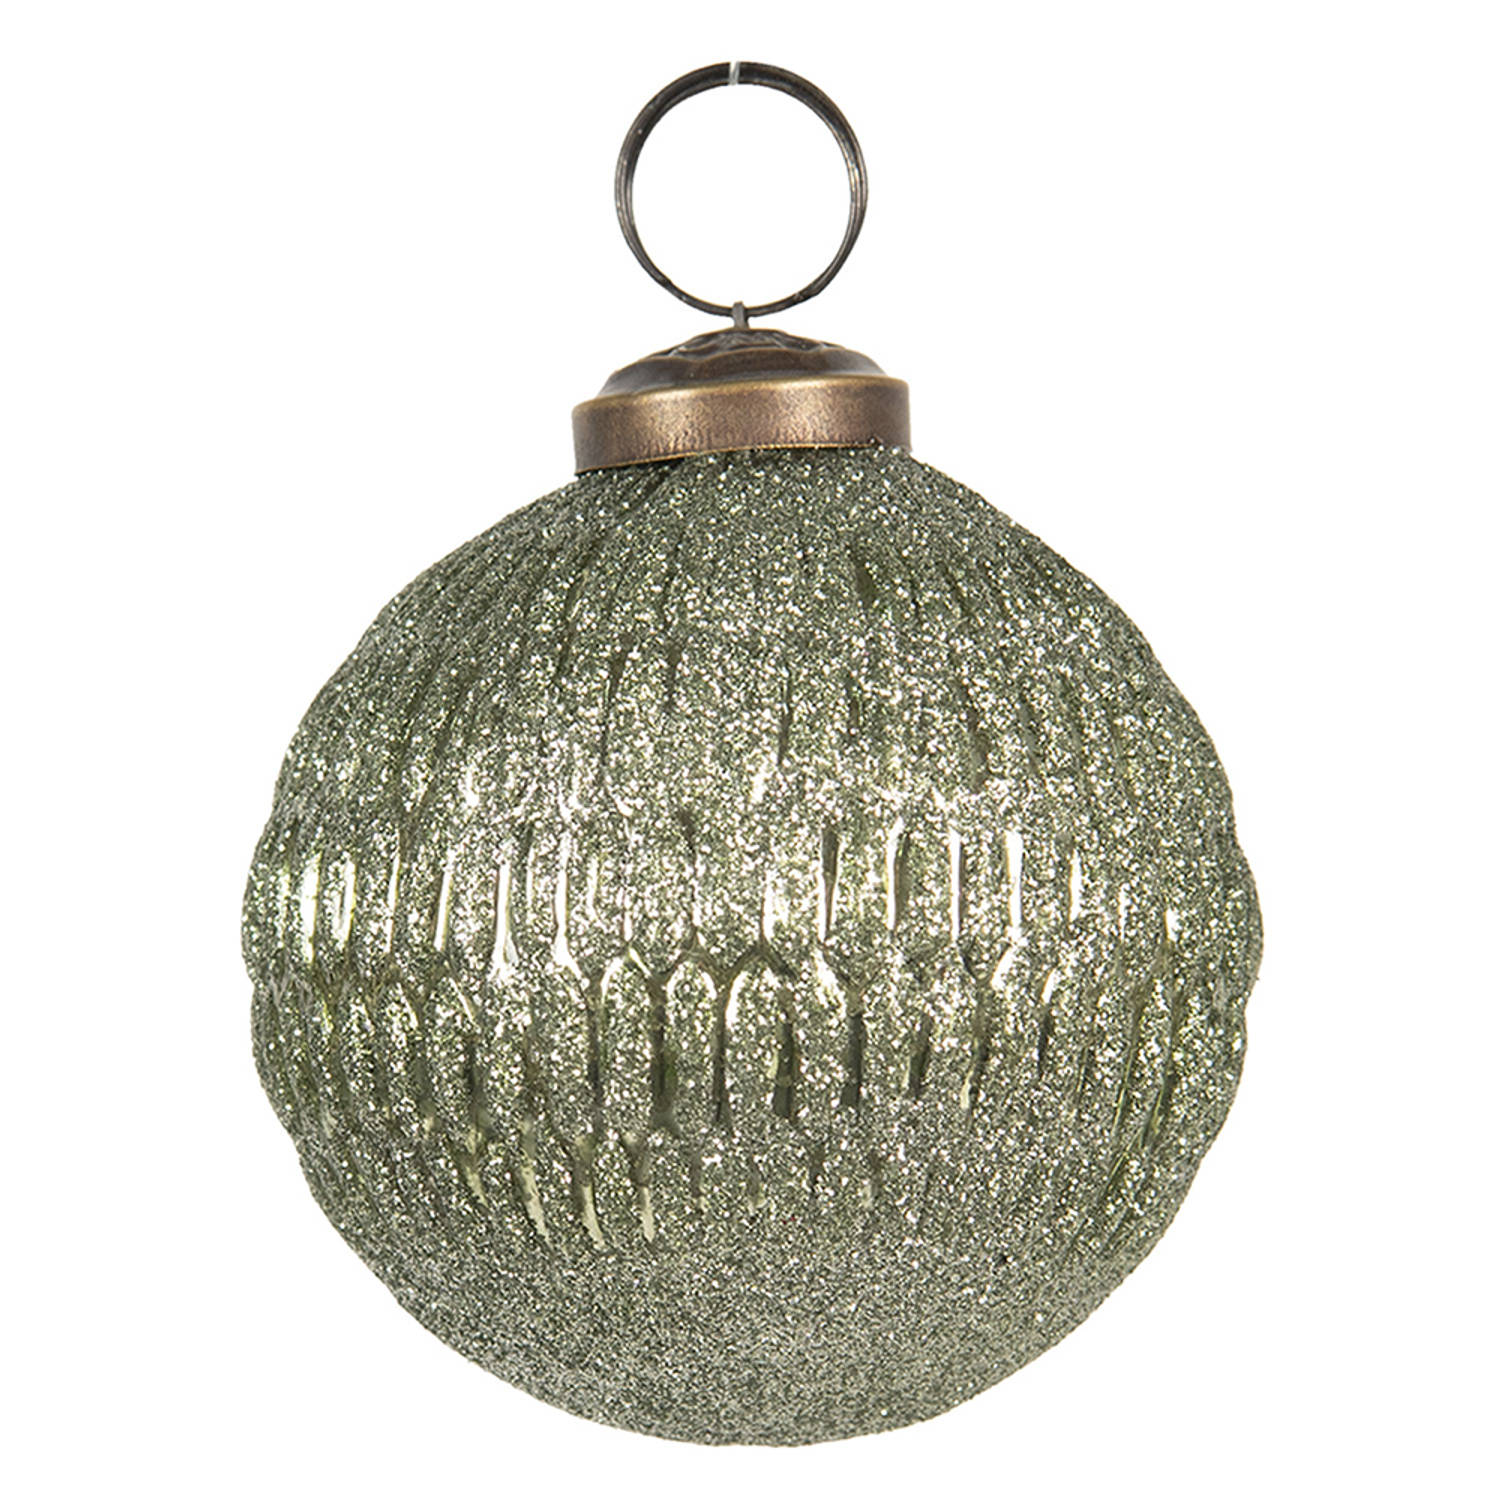 HAES DECO - Kerstbal - Formaat Ø 8x8 cm - Kleur Groen - Materiaal Glas - Kerstversiering, Kerstdecoratie, Decoratie Hanger, Kerstboomversiering